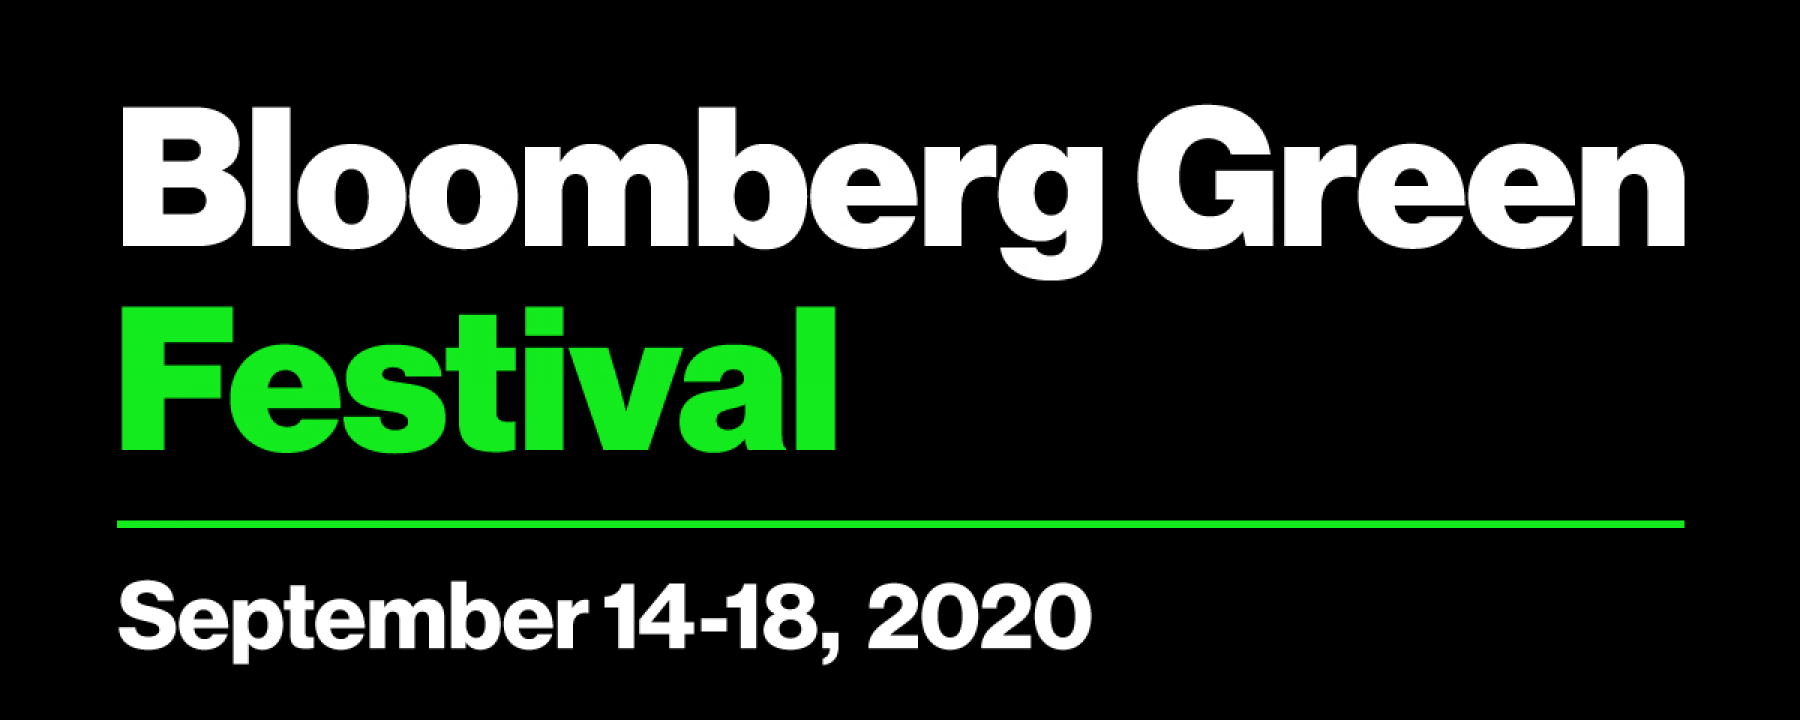 Bloomberg Green Festival, organisé par Bloomberg LP du 14 au 18 septembre 2020 